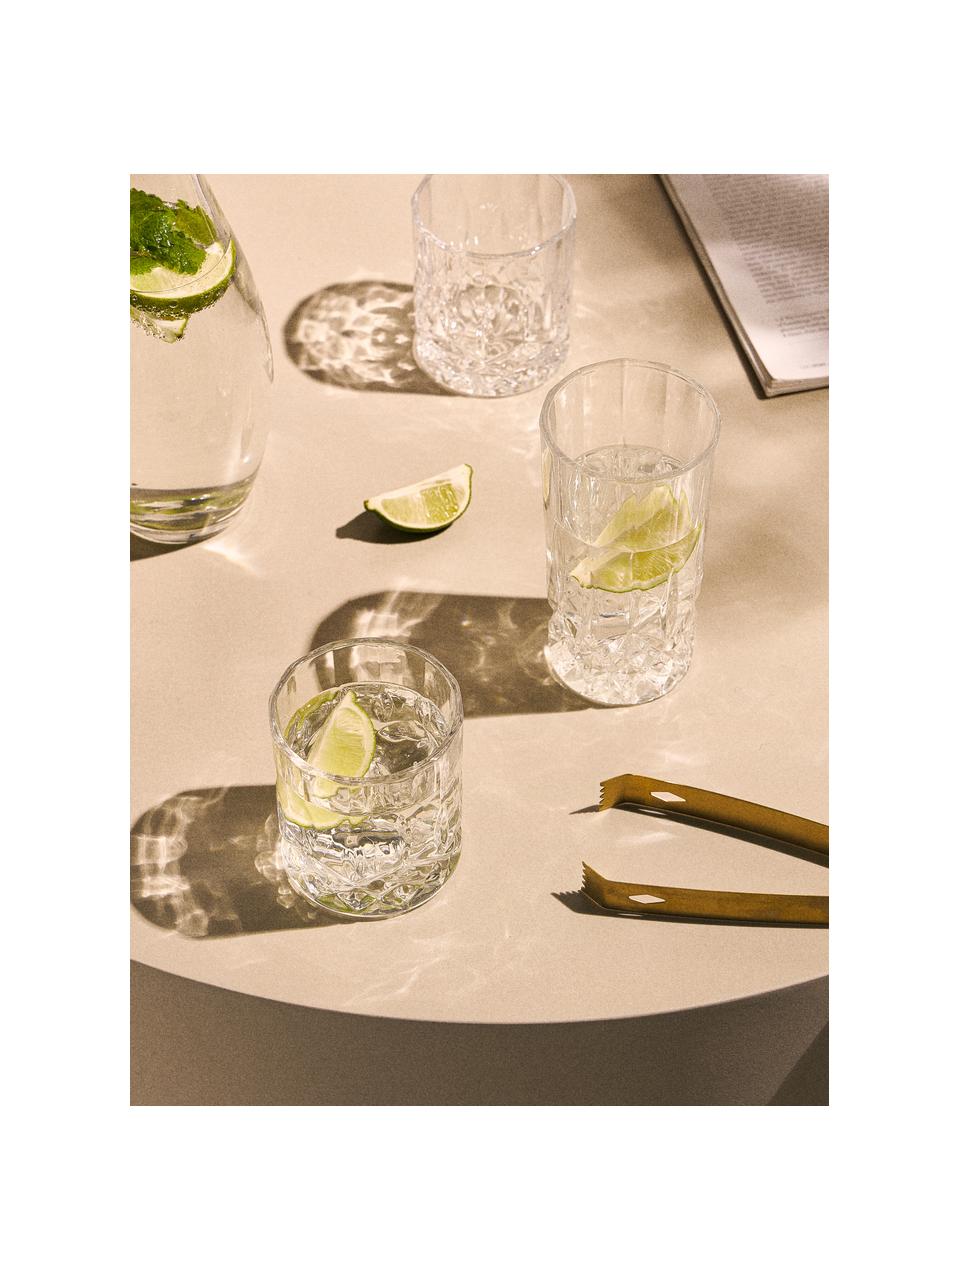 Gläser George mit Kristallrelief, 4 Stück, Glas, Transparent, Ø 8 x H 10 cm, 310 ml